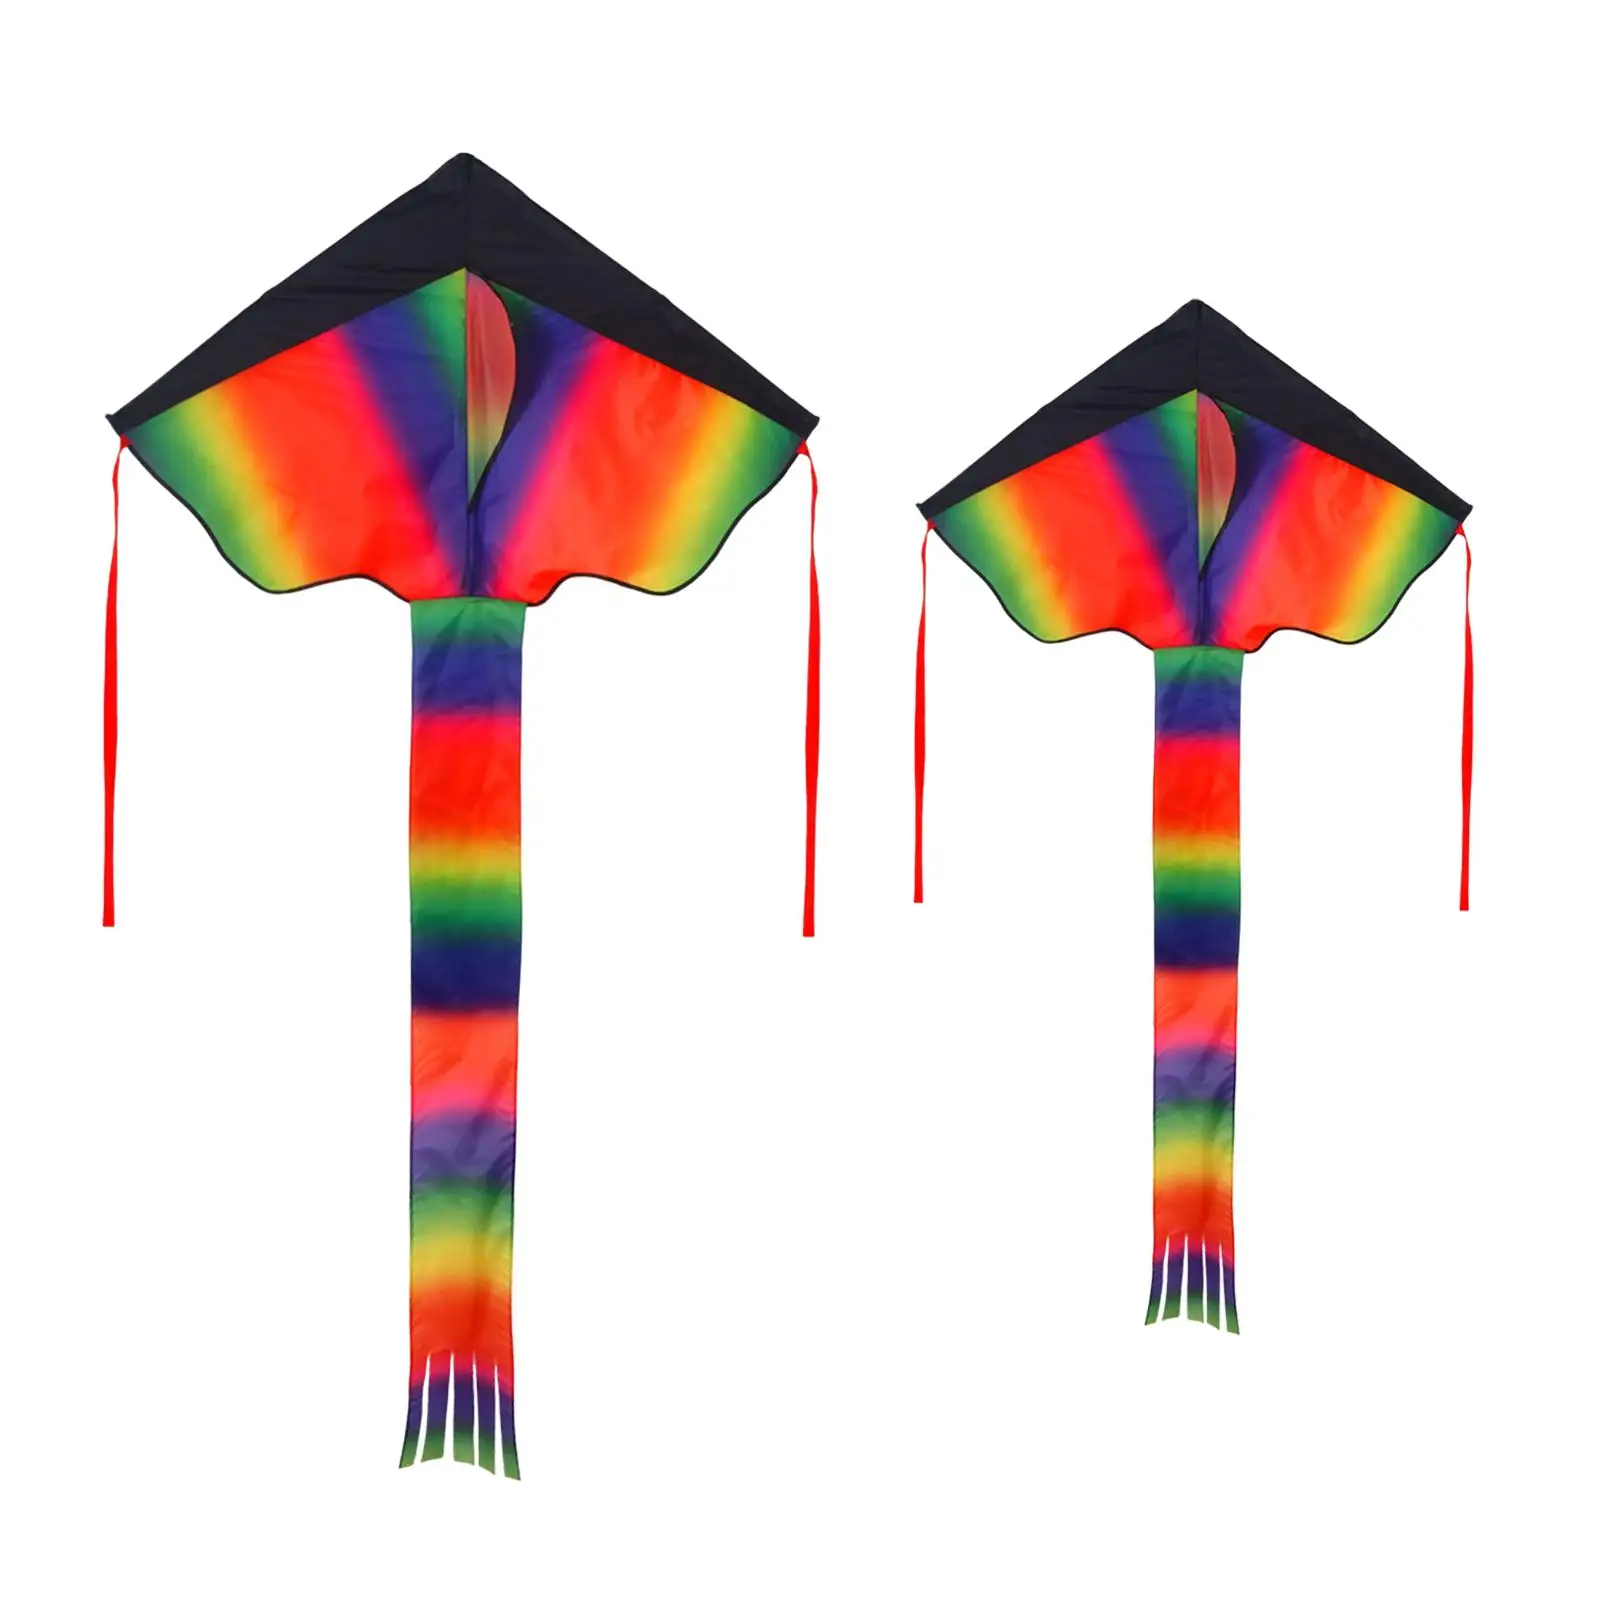 Giant Delta Kites Fly Kite Easy to Flying Toys Kite for Outdoor Beginner